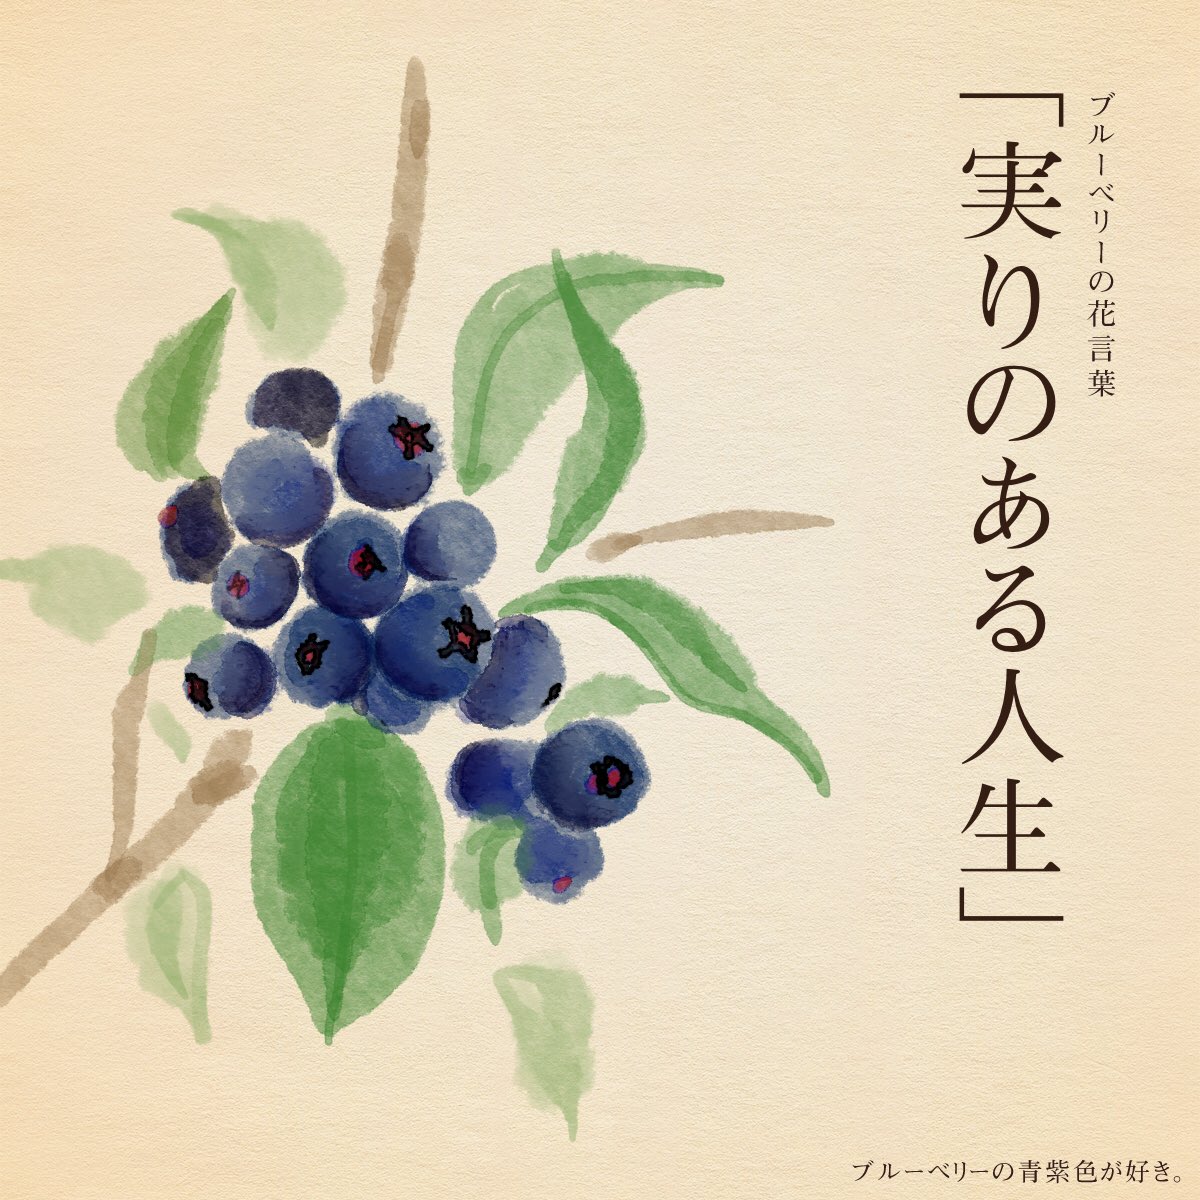 はな言葉 ウェディングドレス きょう8月8日は ブルーベリーの日 Blueberryのbbがに似ていることと ブルベリーの収穫時期に当たることから制定 ブルーベリーの花言葉は 実りのある人生